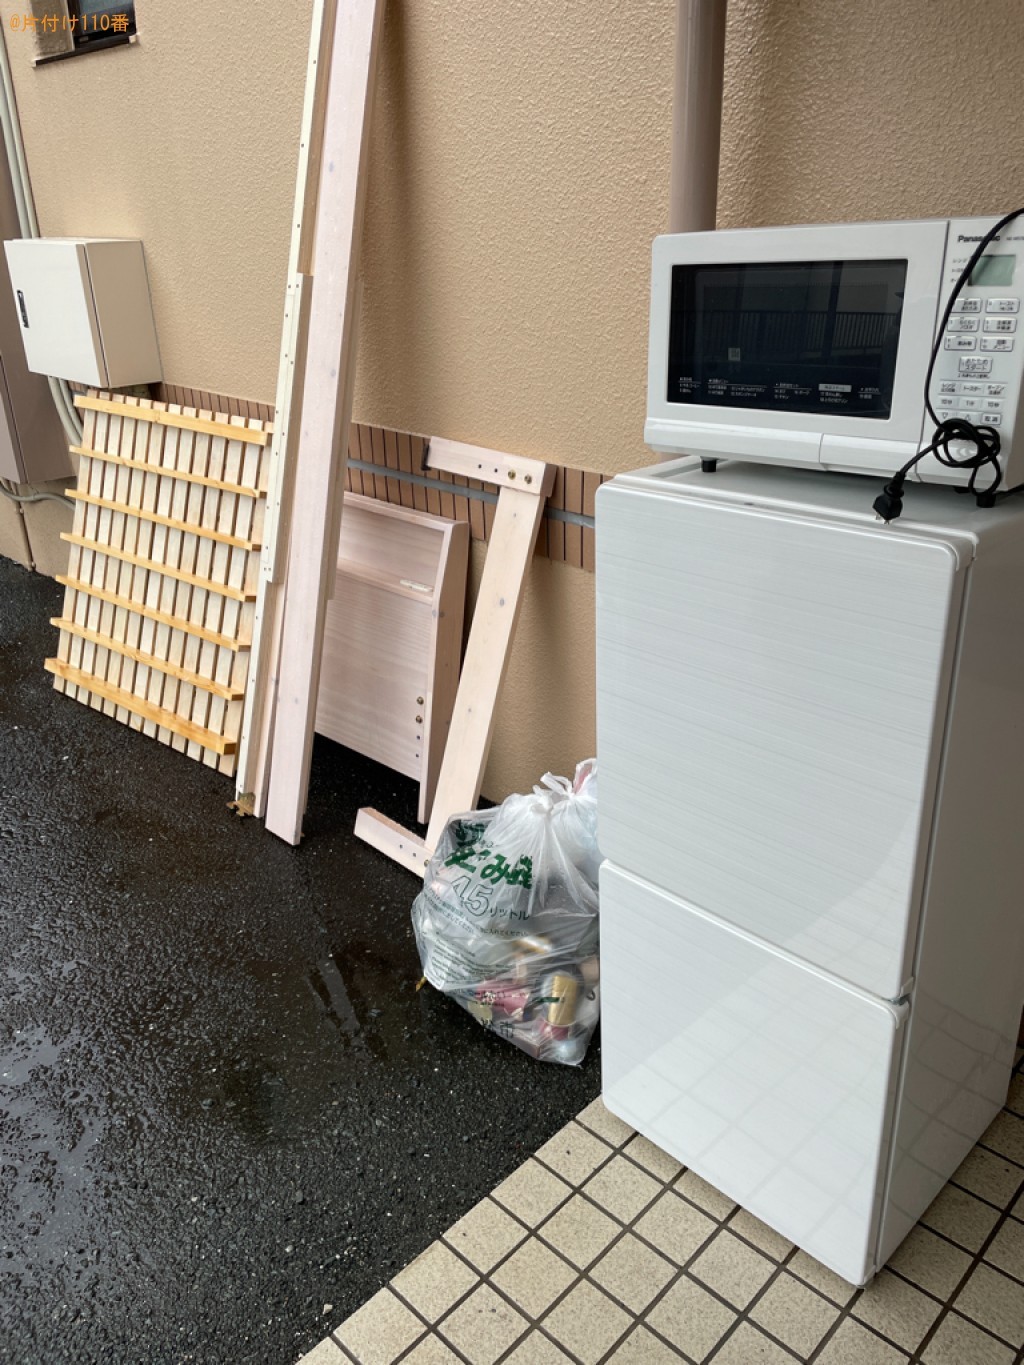 【浜松市】シングルベッド、冷蔵庫、電子レンジ、一般ごみの回収